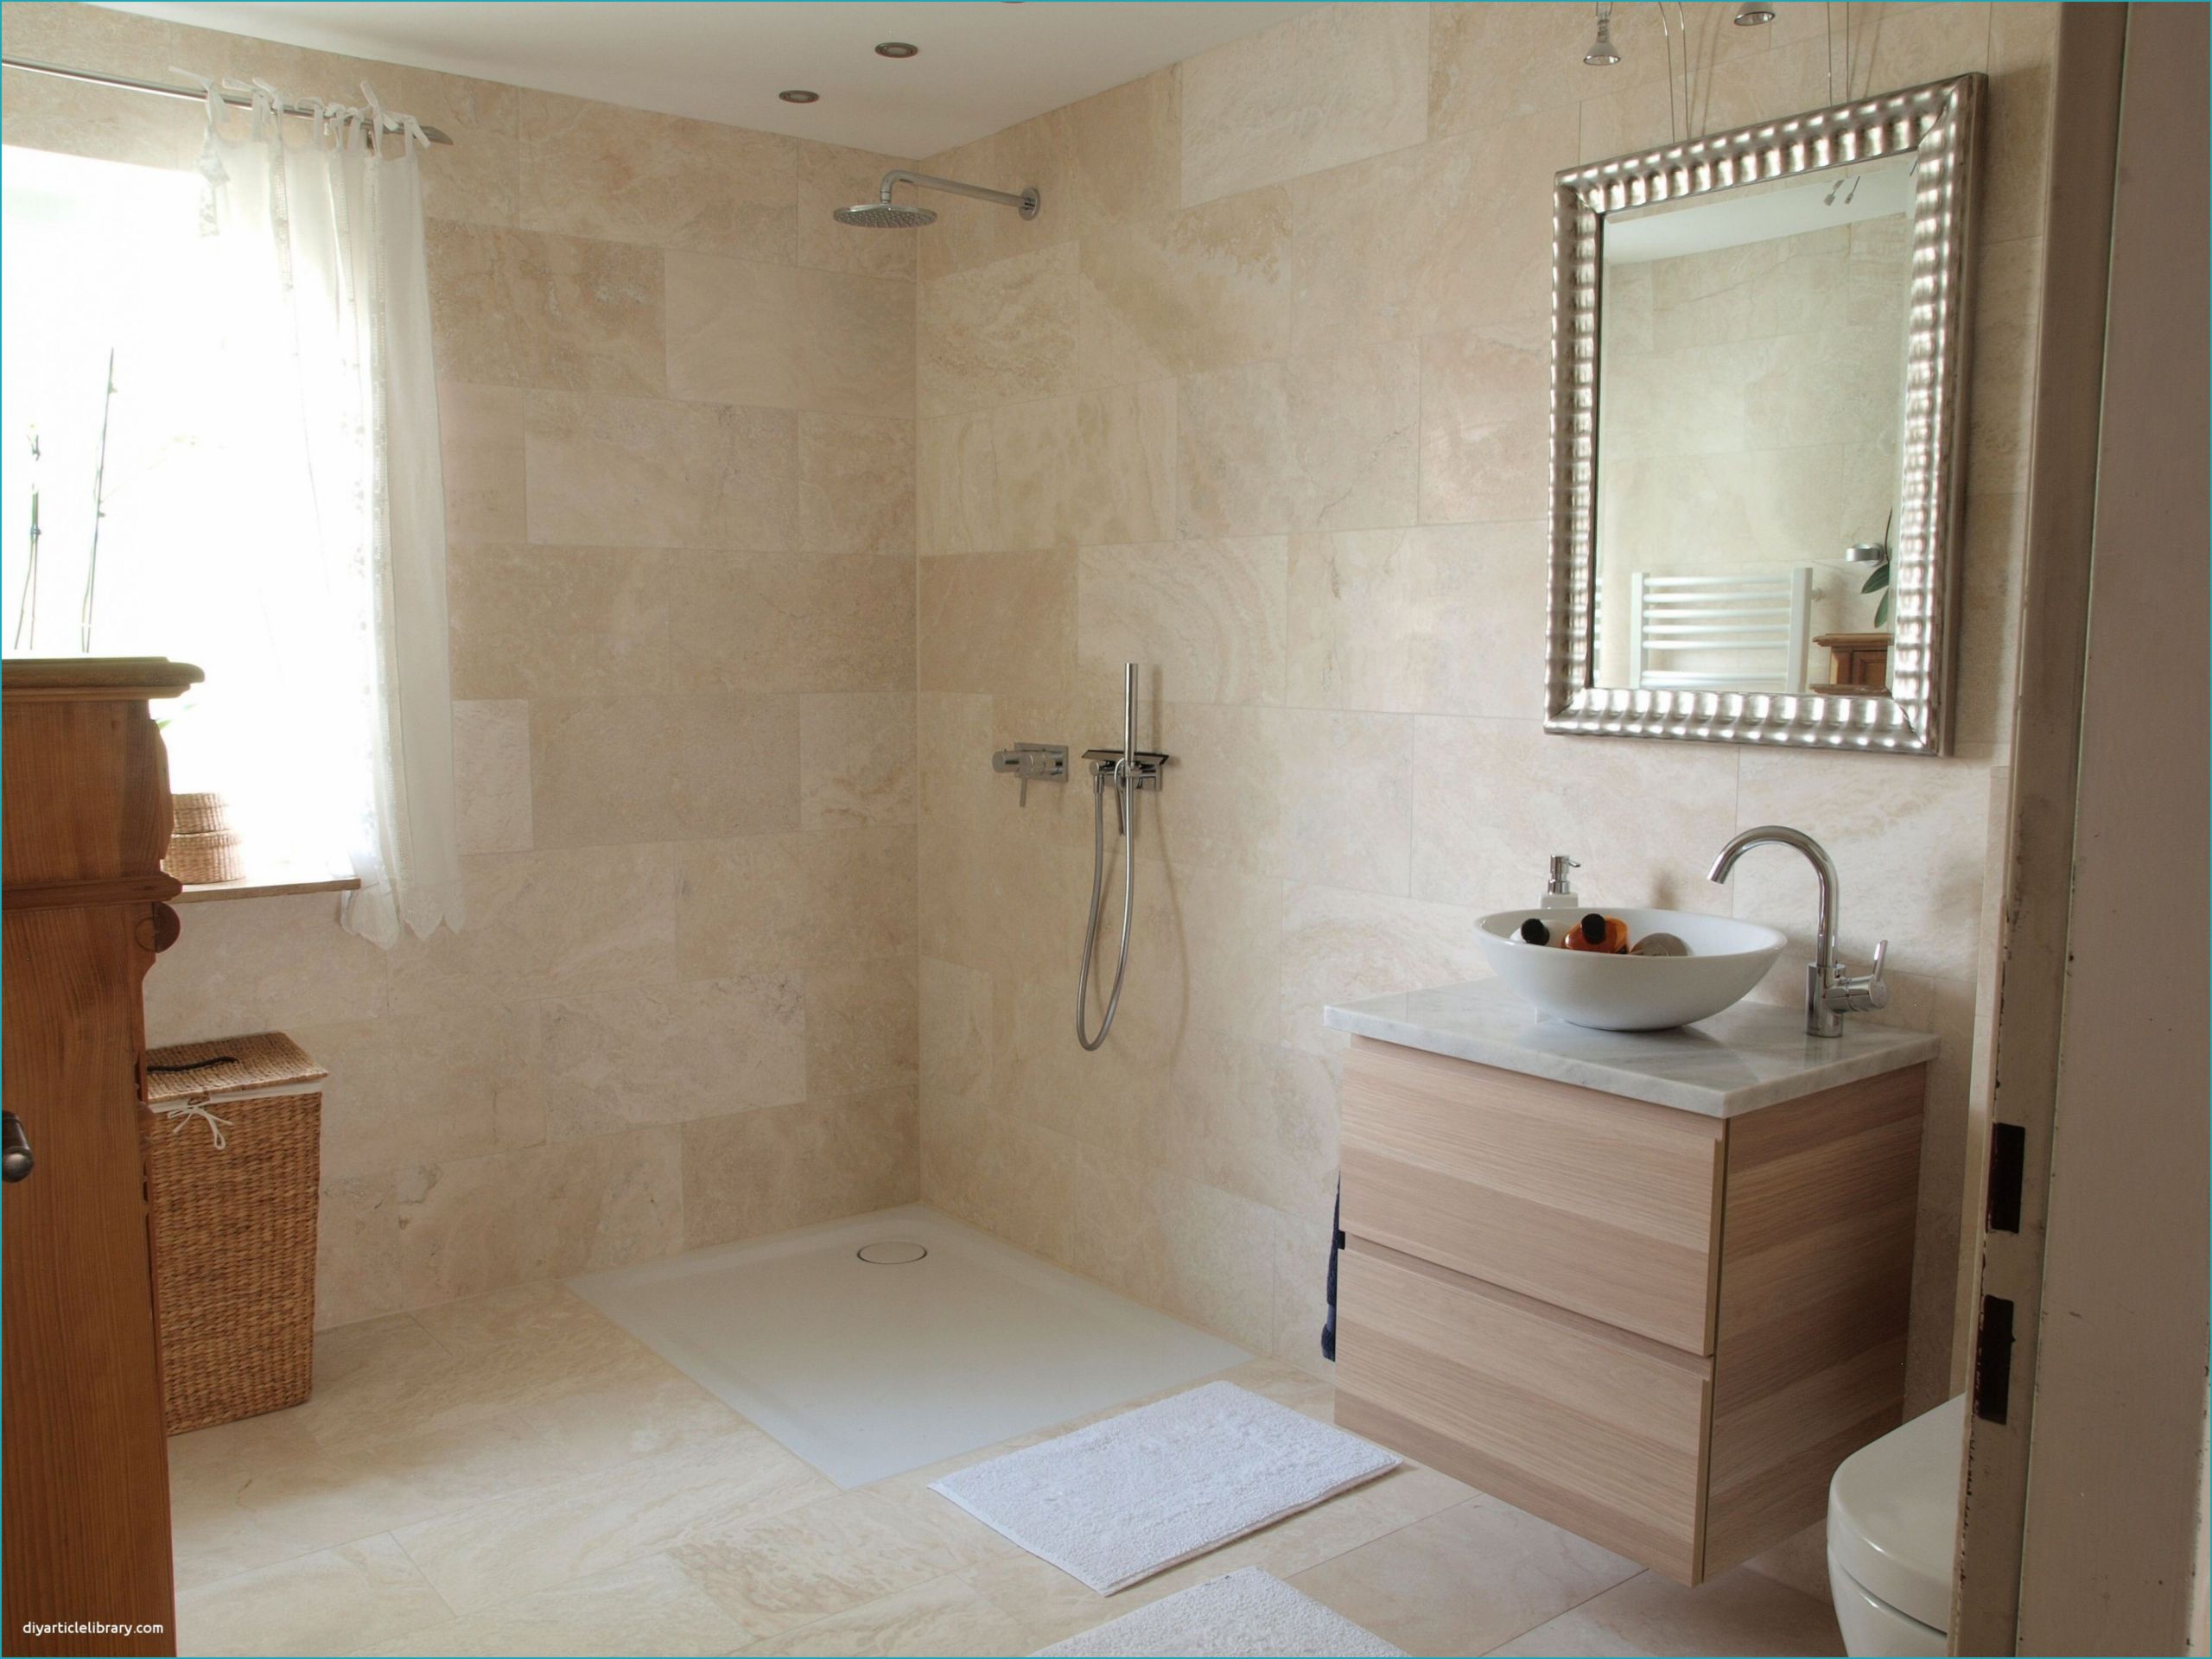 20 elegant badezimmer mit weis und anthrazit5 stock grau weiss badezimmer grau weiss badezimmer